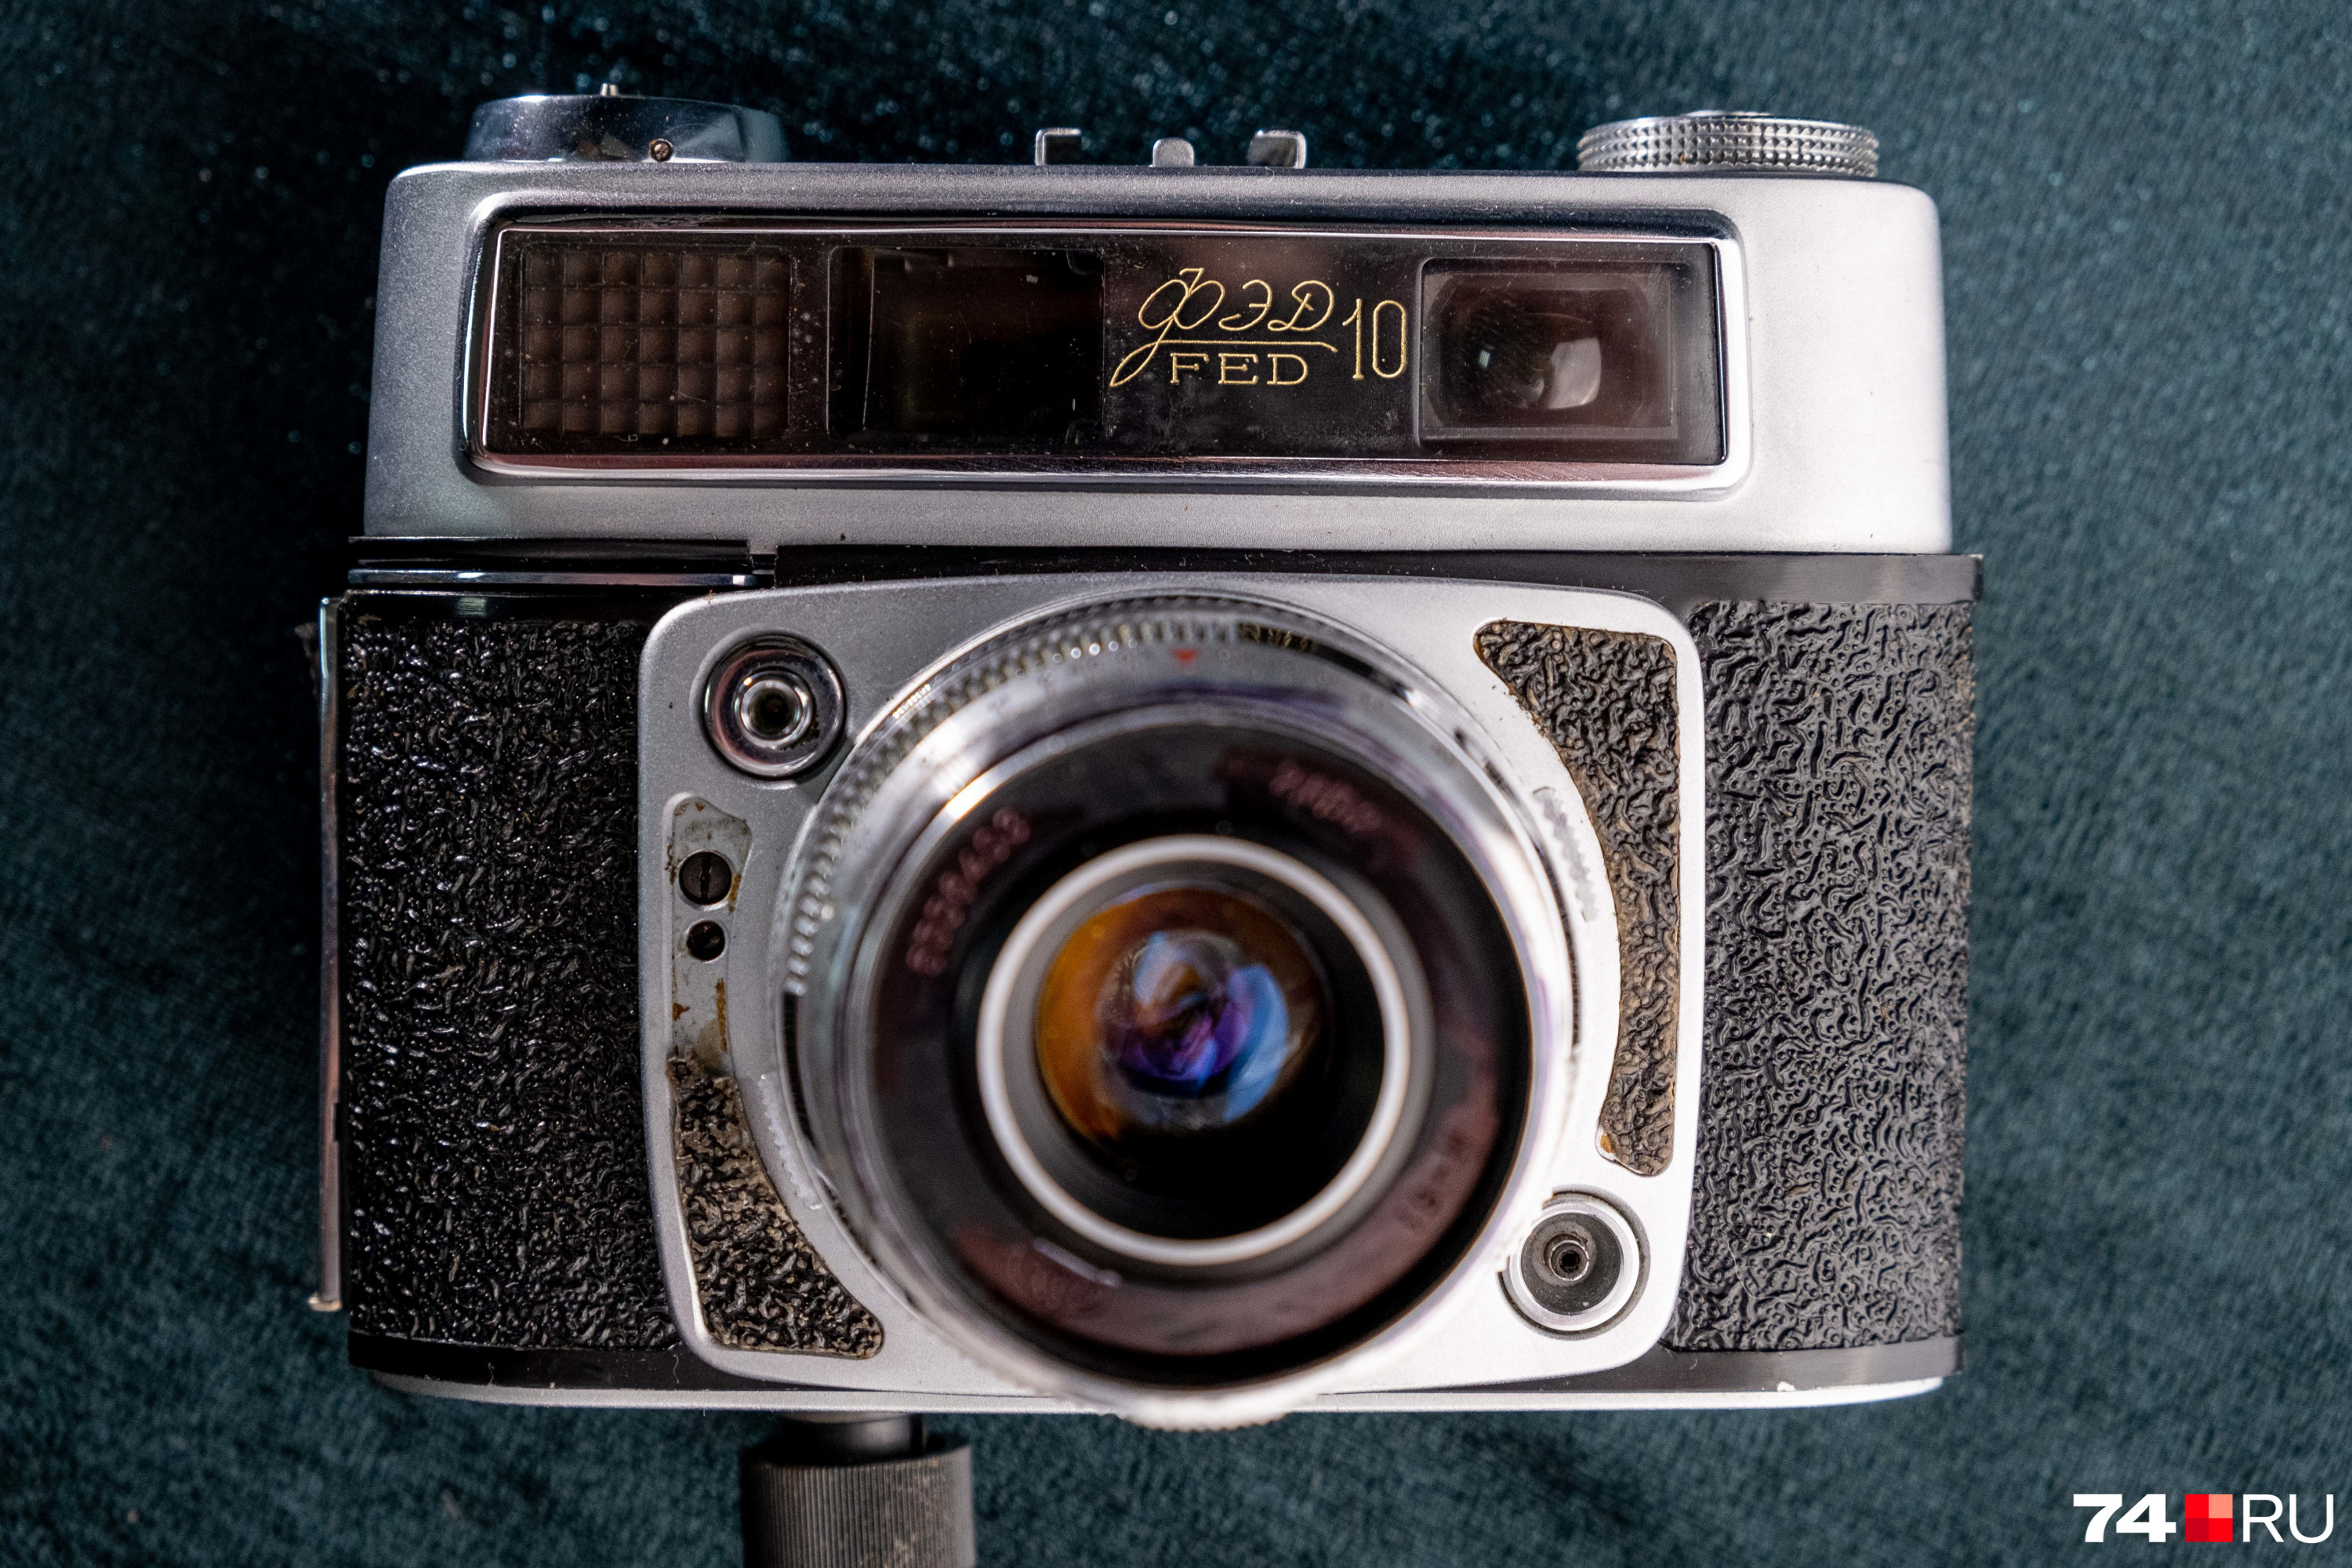 ФЭД-10 — это дальномерный фотоаппарат малого формата